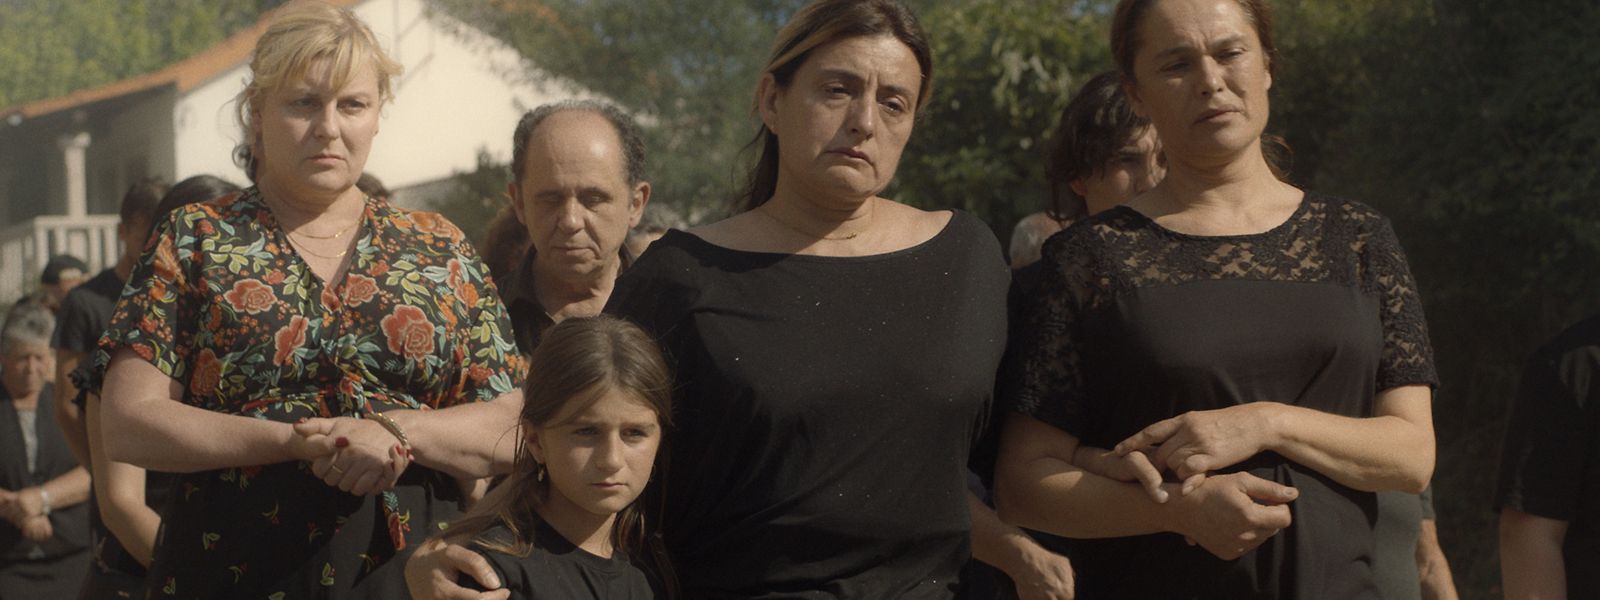 "Alma Viva", de Cristèle Alves Meira, foi um dos filmes portugueses em destaque na edição deste ano de Cannes.